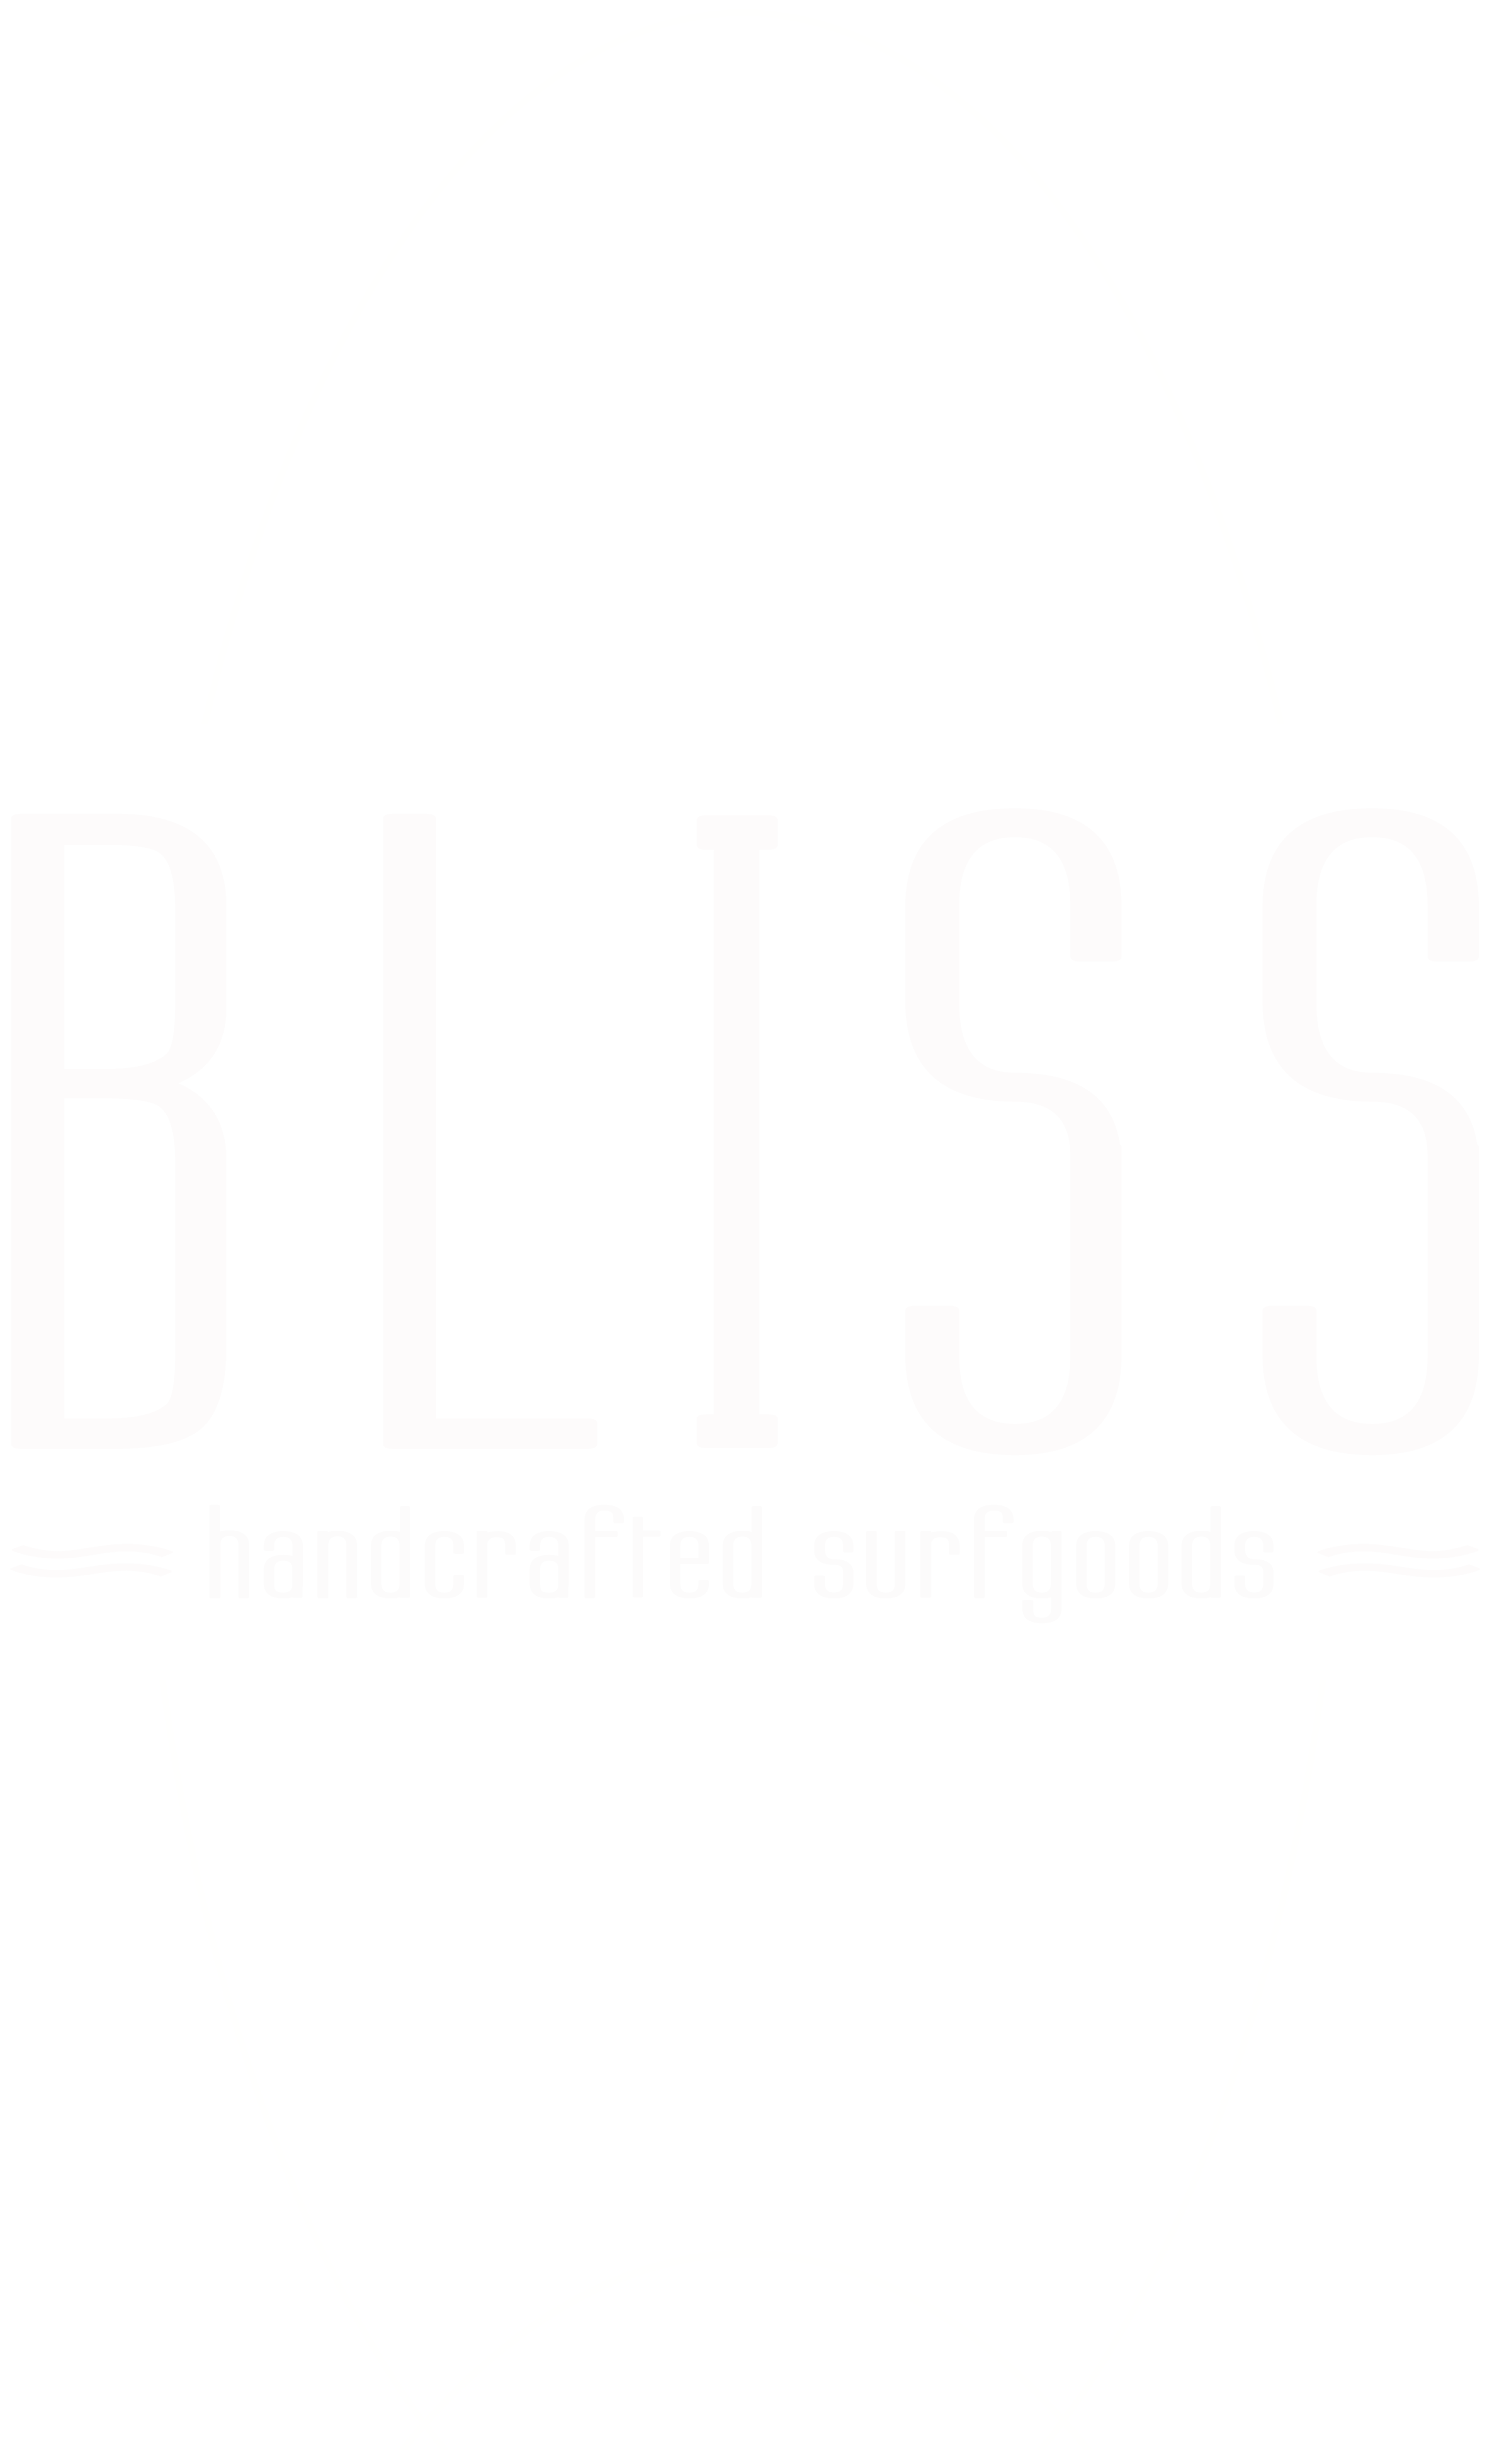 Abbildung: Logo Bliss Surfboards weiß